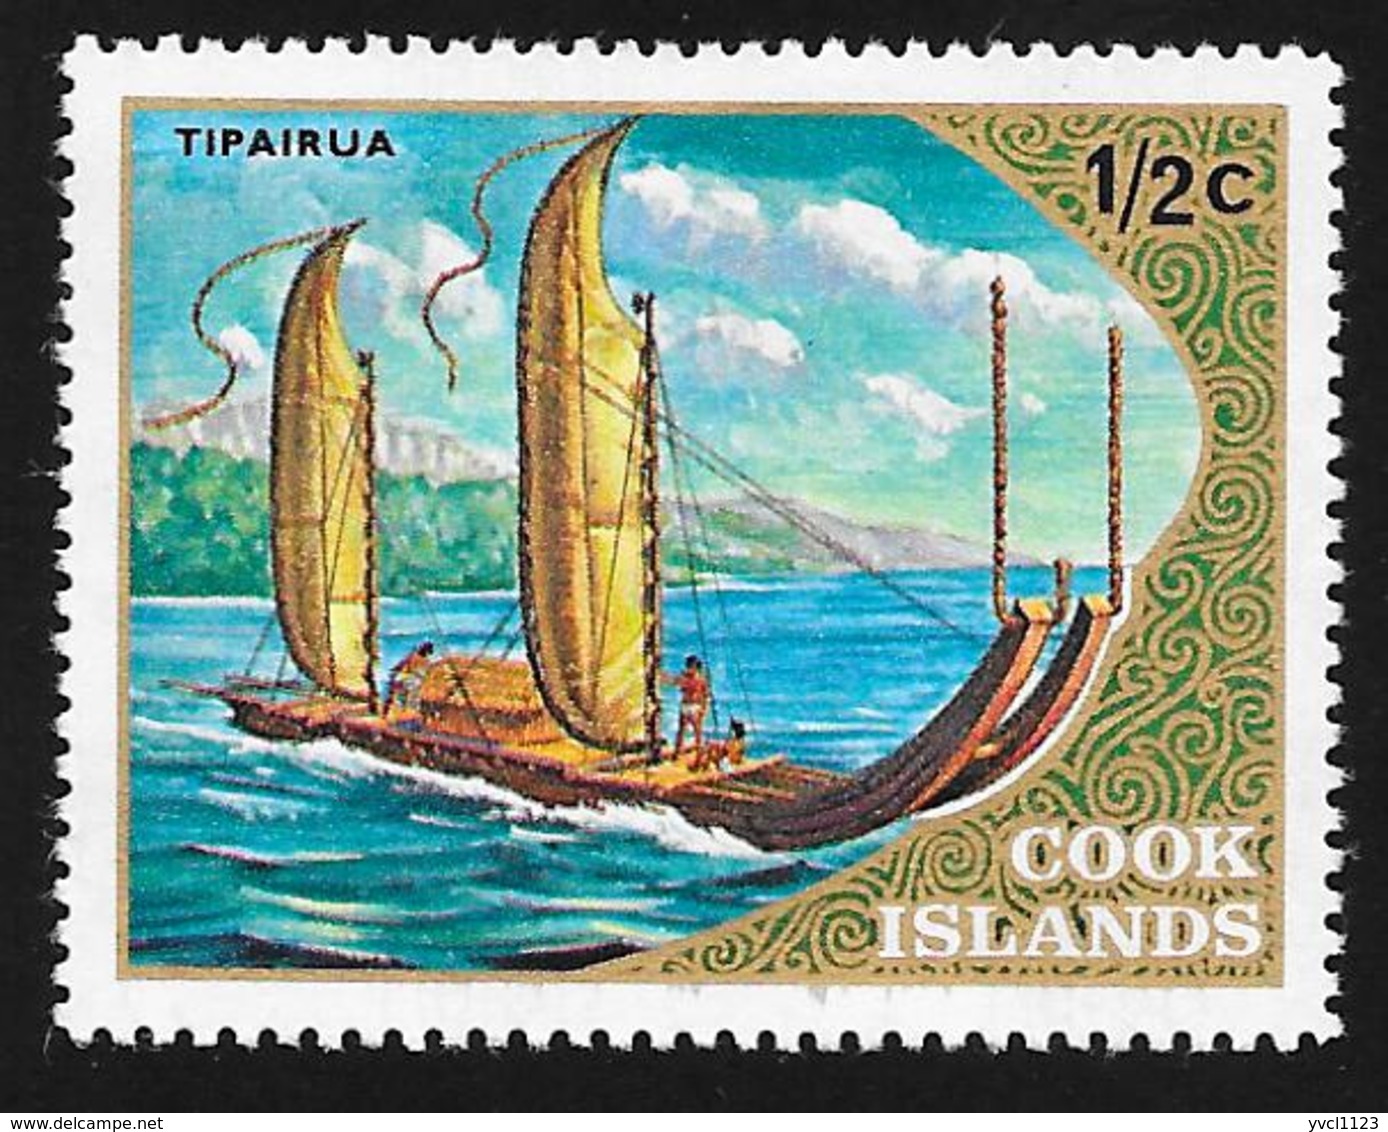 COOK ISLANDS - Scott #357 Tipairua / Mint H Stamp - Cook